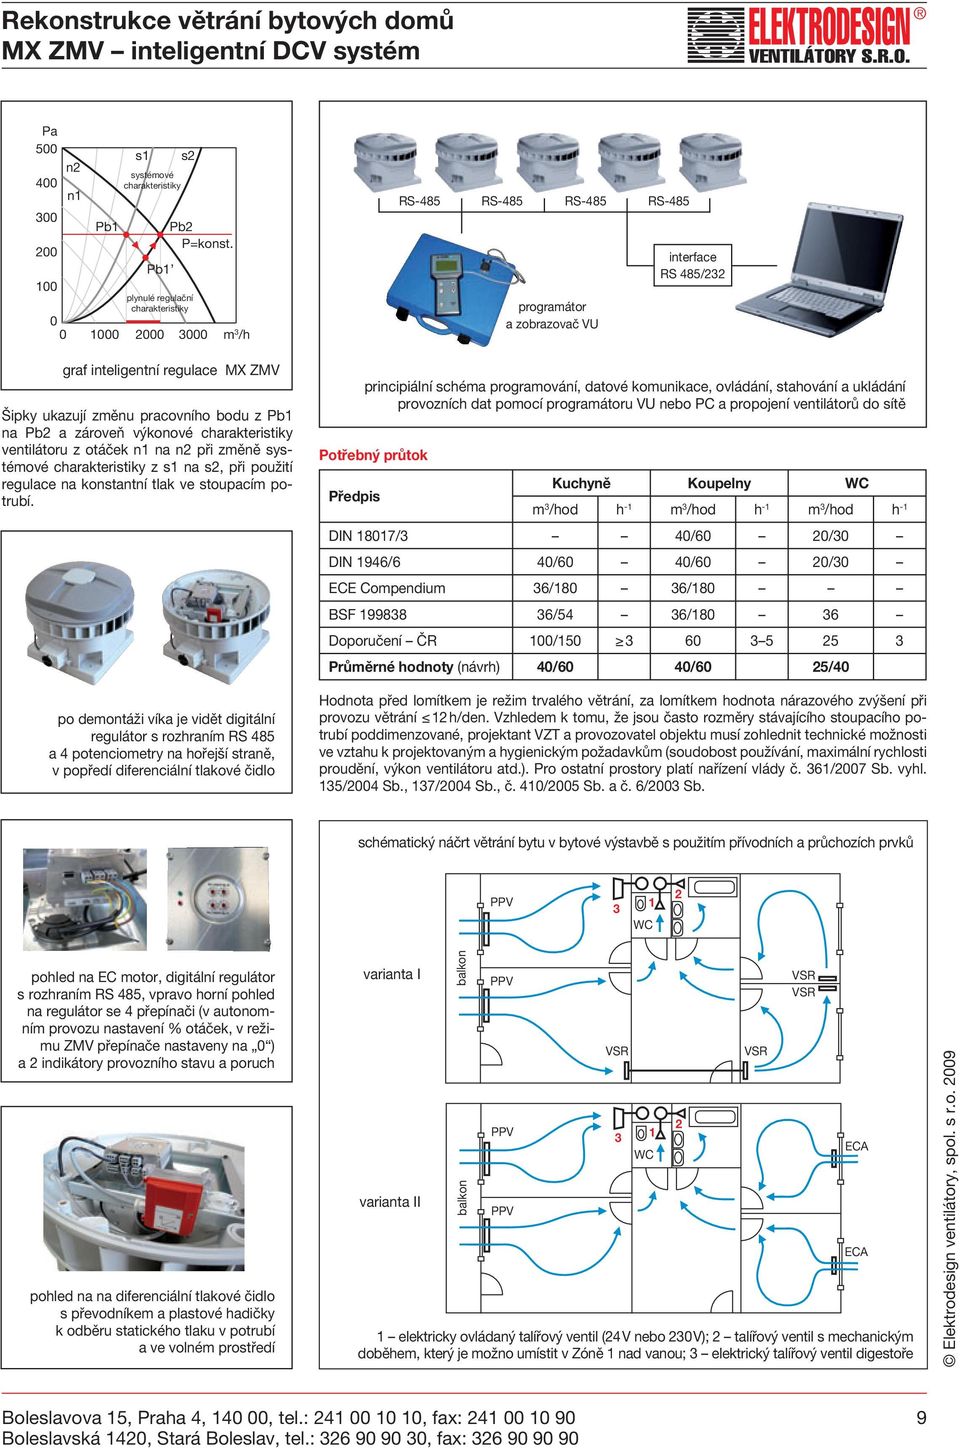 charakteristiky ventilátoru z otáček n1 na n2 při změně systémové charakteristiky z s1 na s2, při použití regulace na konstantní tlak ve stoupacím potrubí.